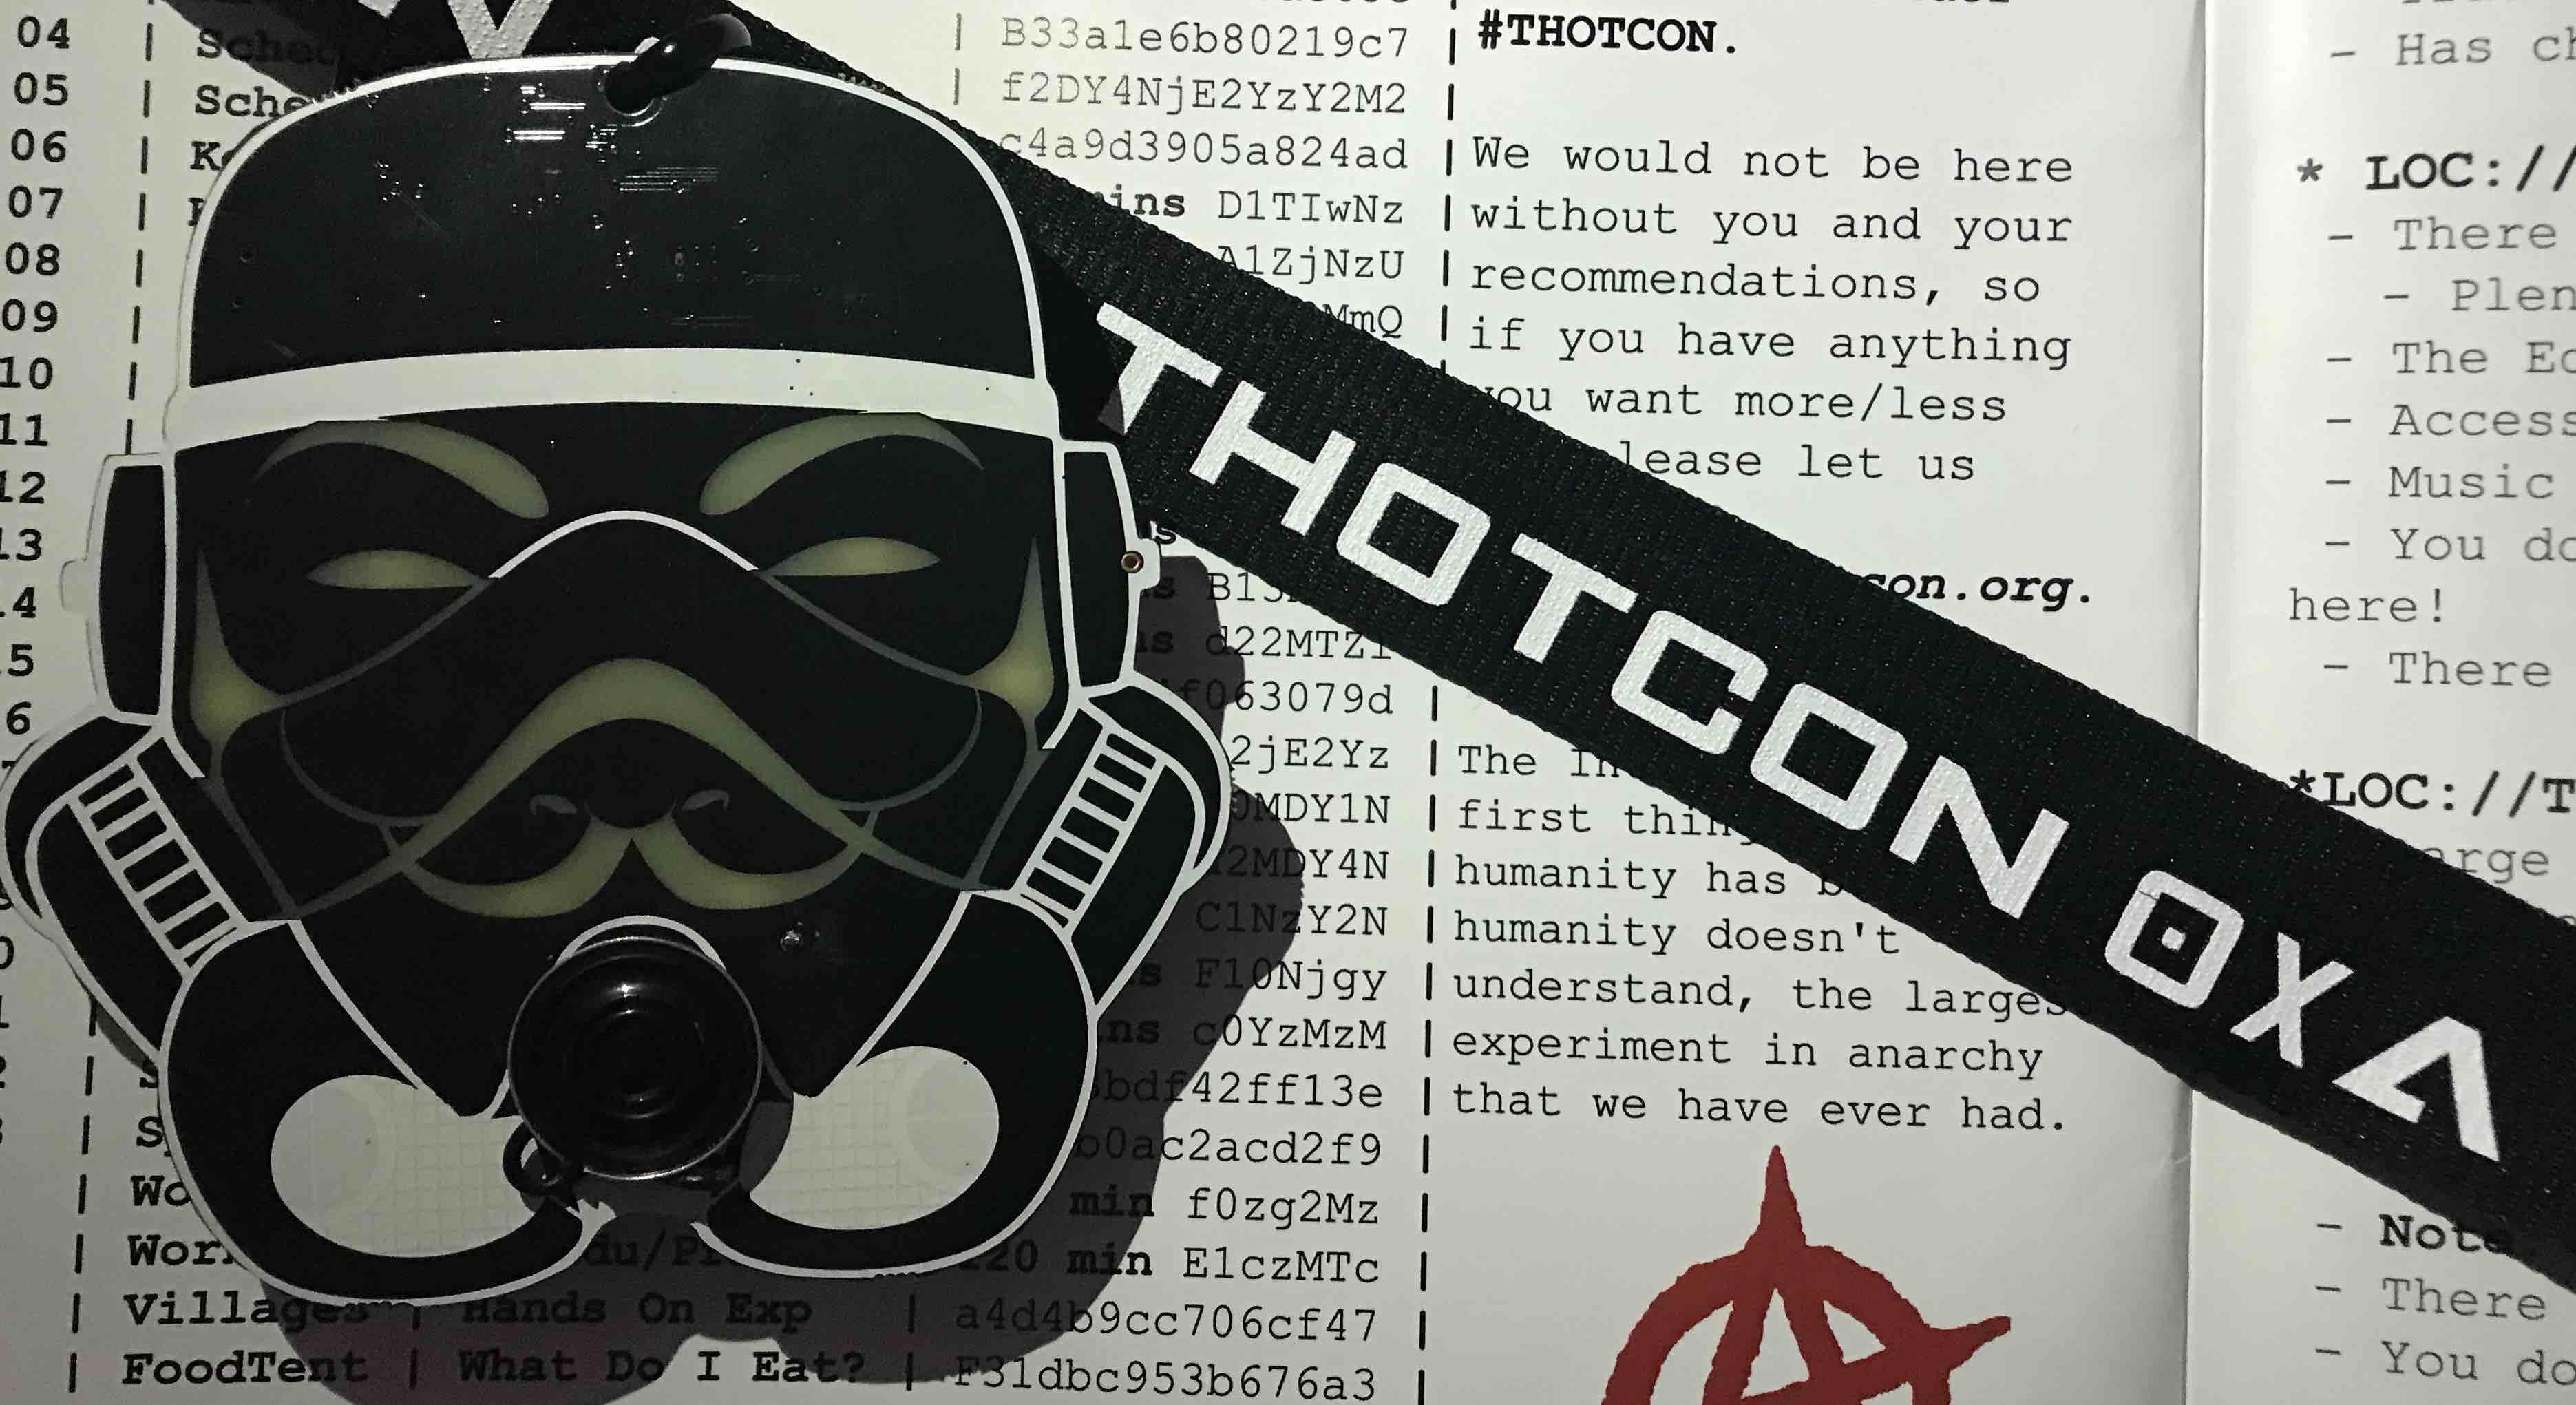 Thotcon 0xA Badge Contest